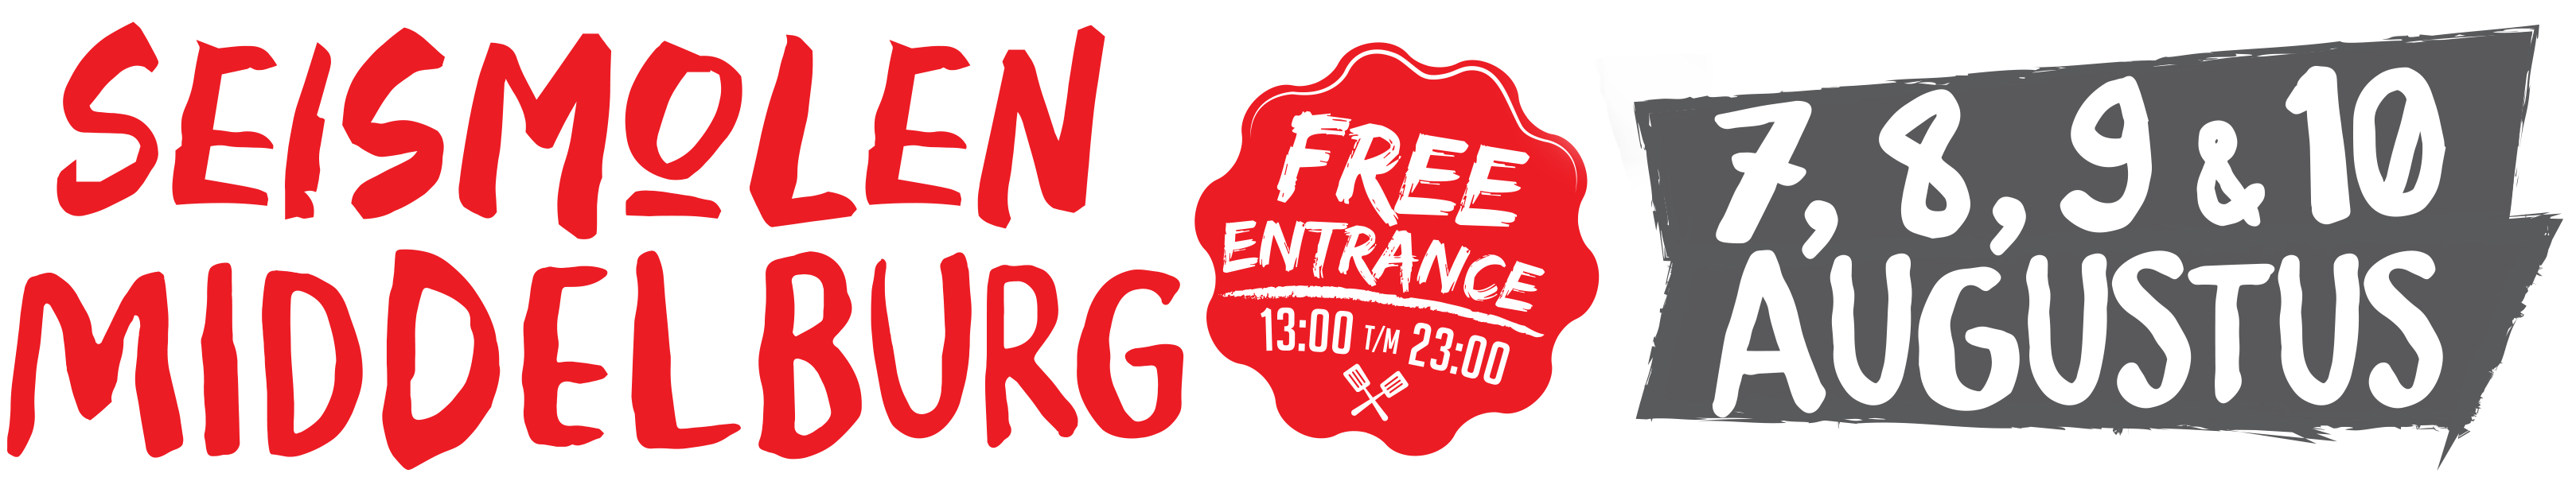 Culikaravaan 2022 foodtruck en street food festival in Middelburg